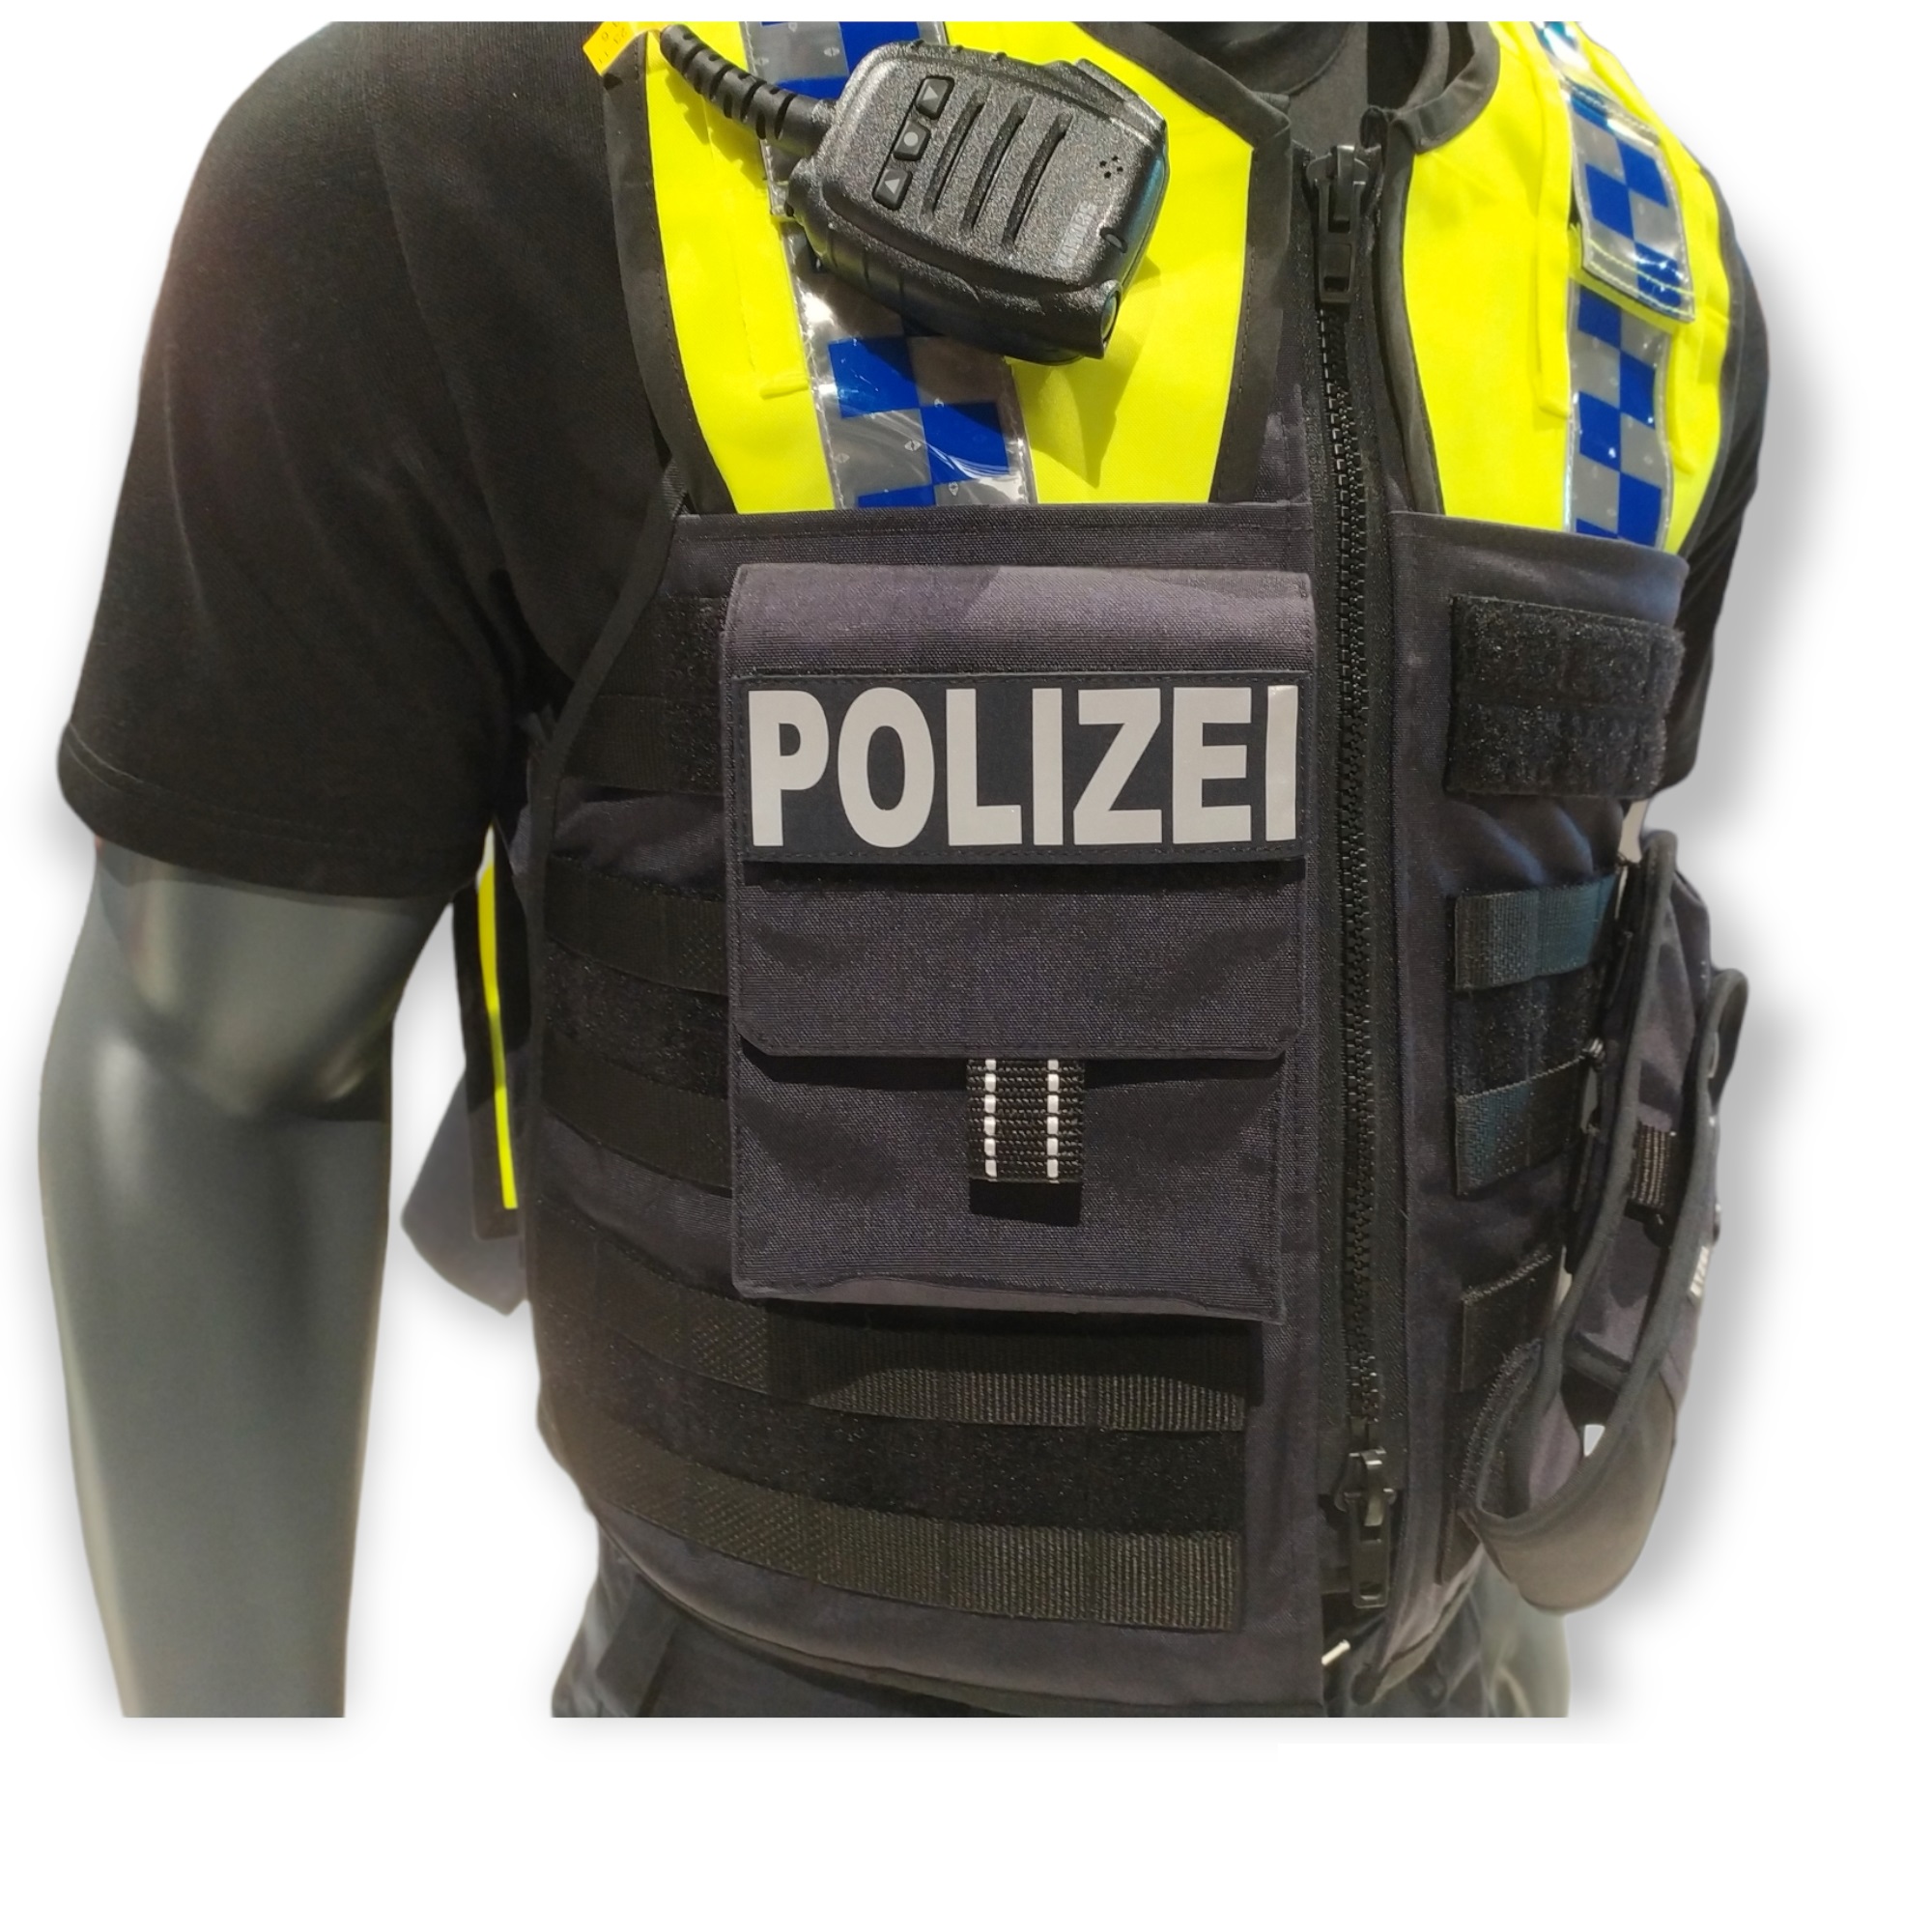 Polizei Molle Organizer ✪ f. Schutzweste ✪ Tasche/Holster in